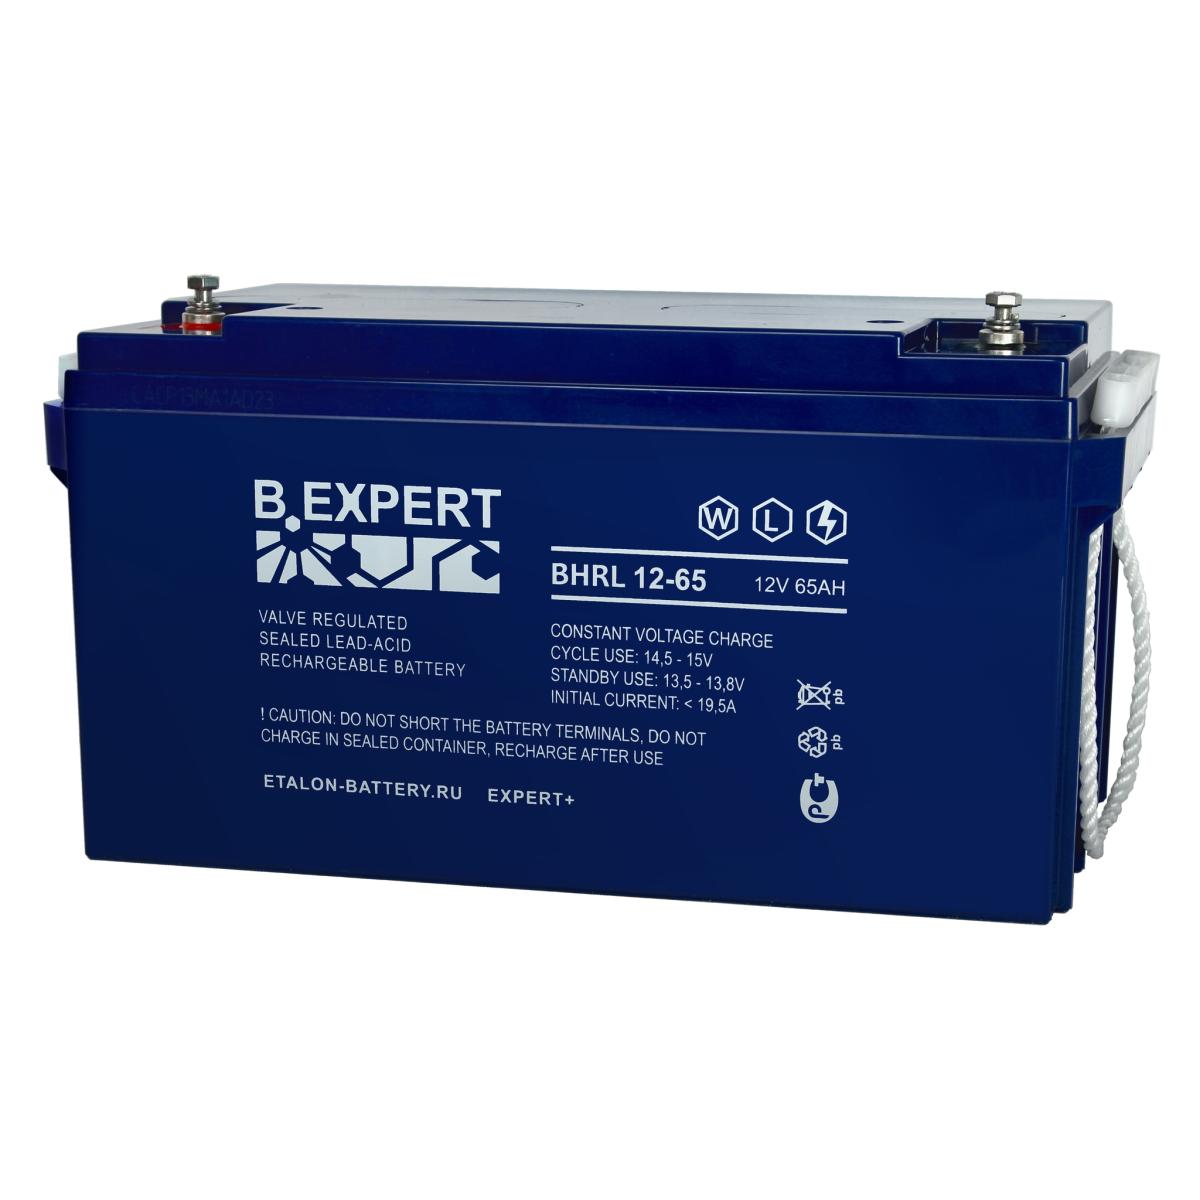 EXPERT BHRL 12-65 Аккумулятор герметичный свинцово-кислотный